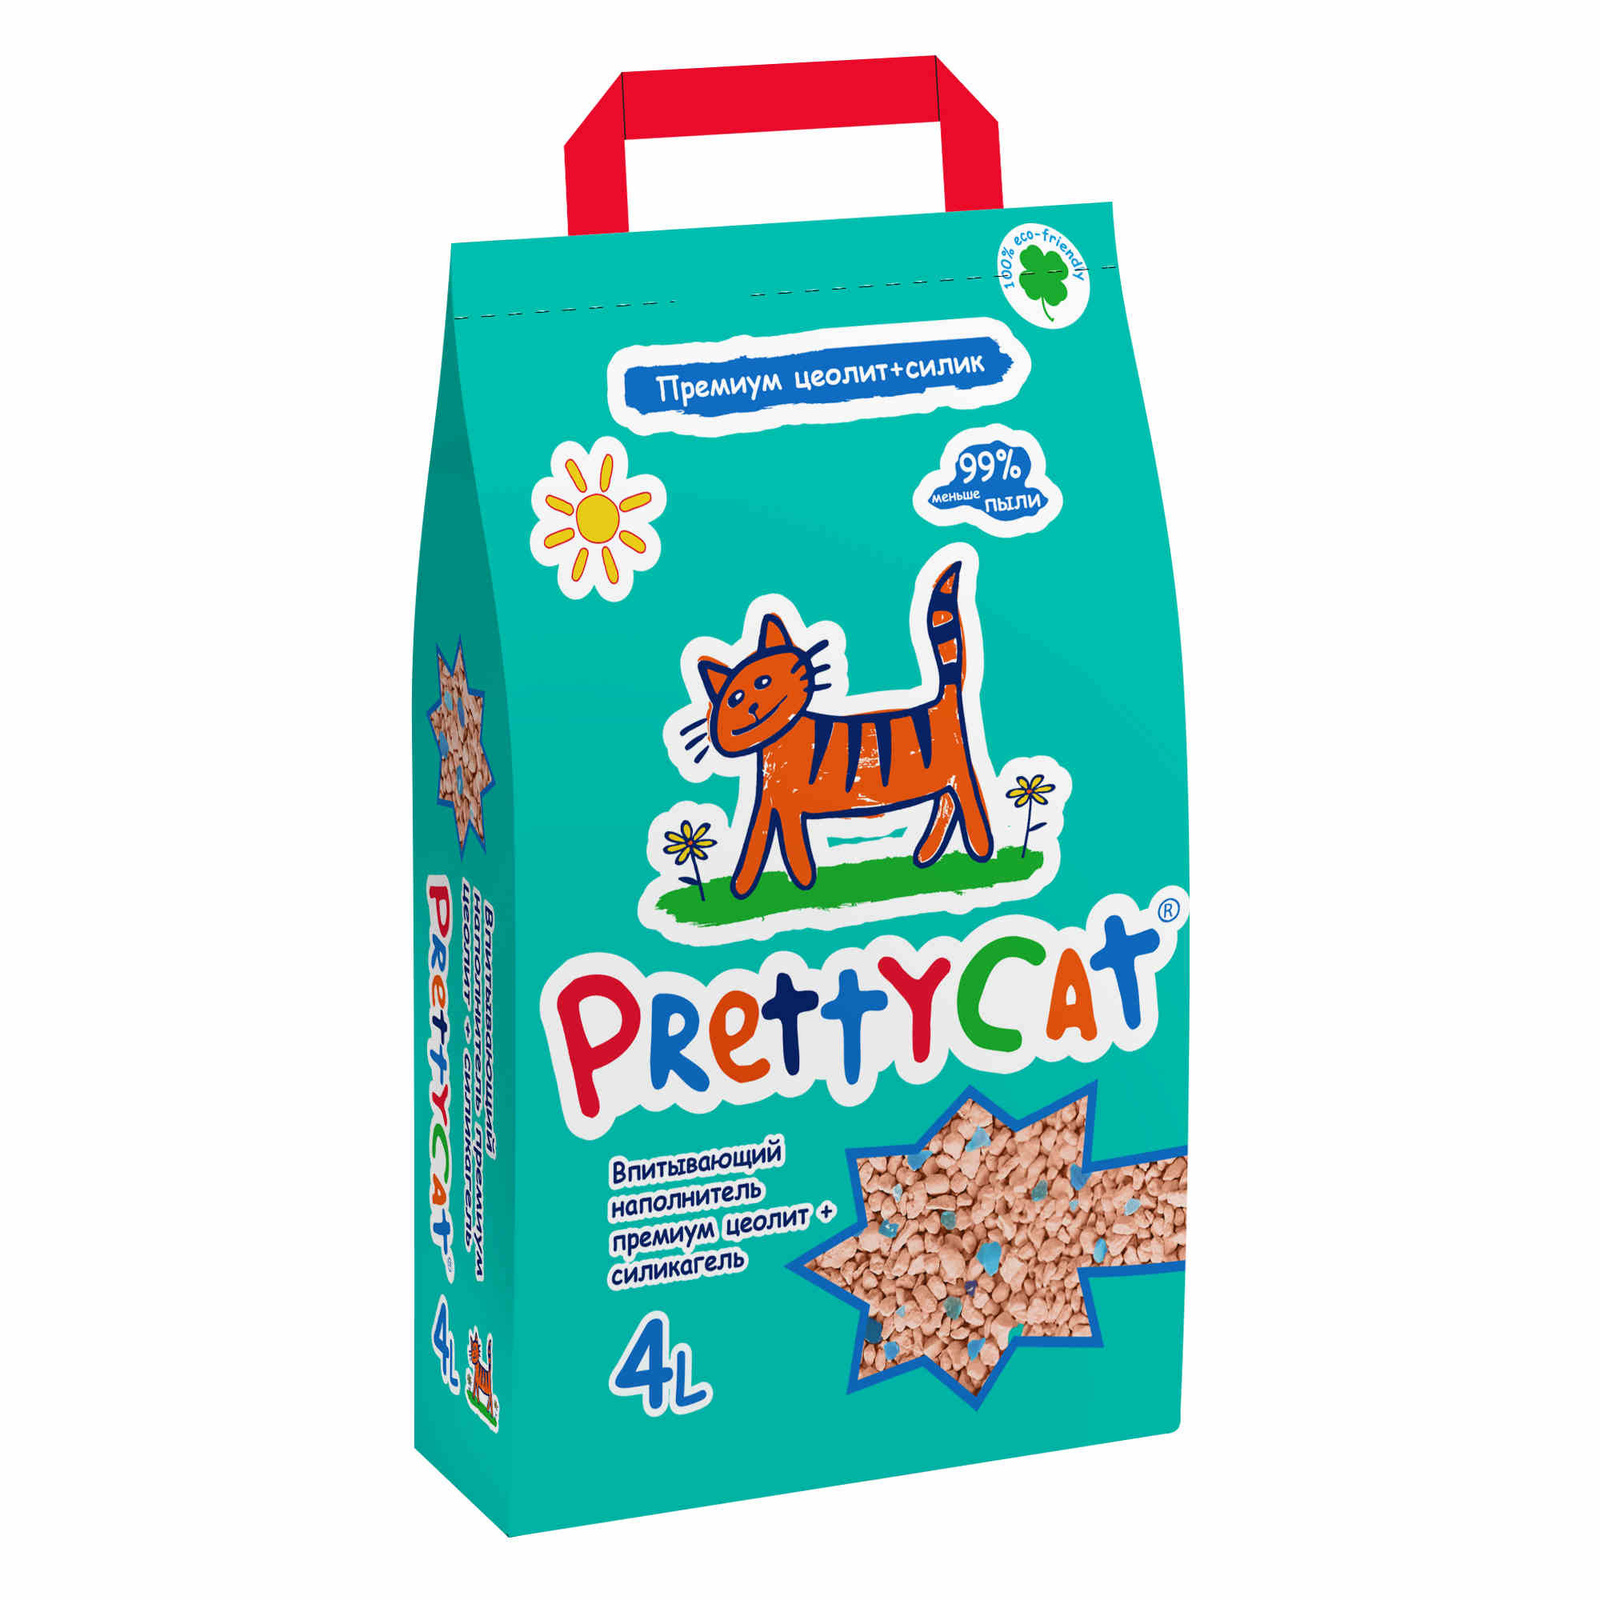 PrettyCat PrettyCat наполнитель впитывающий для кошачьих туалетов Premium (4 кг) prettycat prettycat наполнитель впитывающий для кошачьих туалетов 4 кг